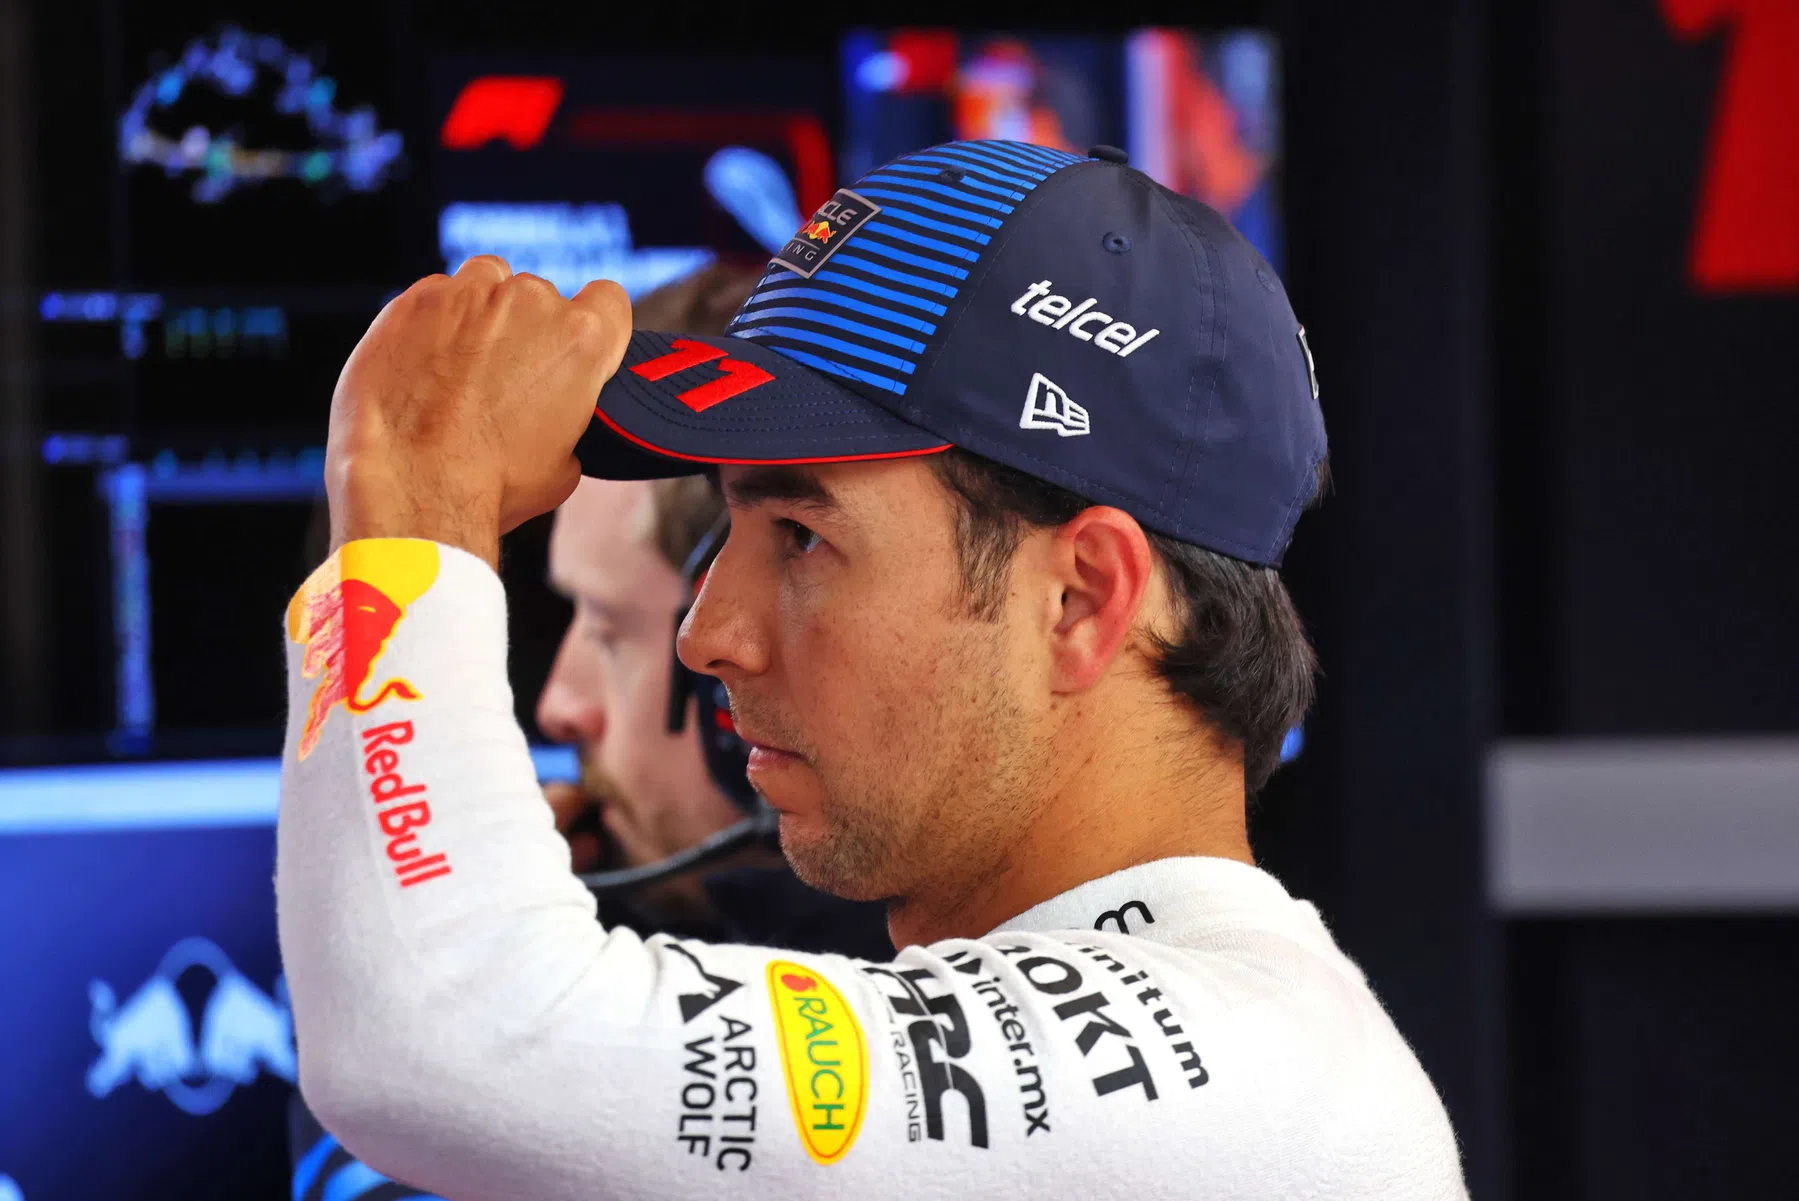 Pérez recibe una penalización en parrilla y una fuerte multa para Red Bull Racing